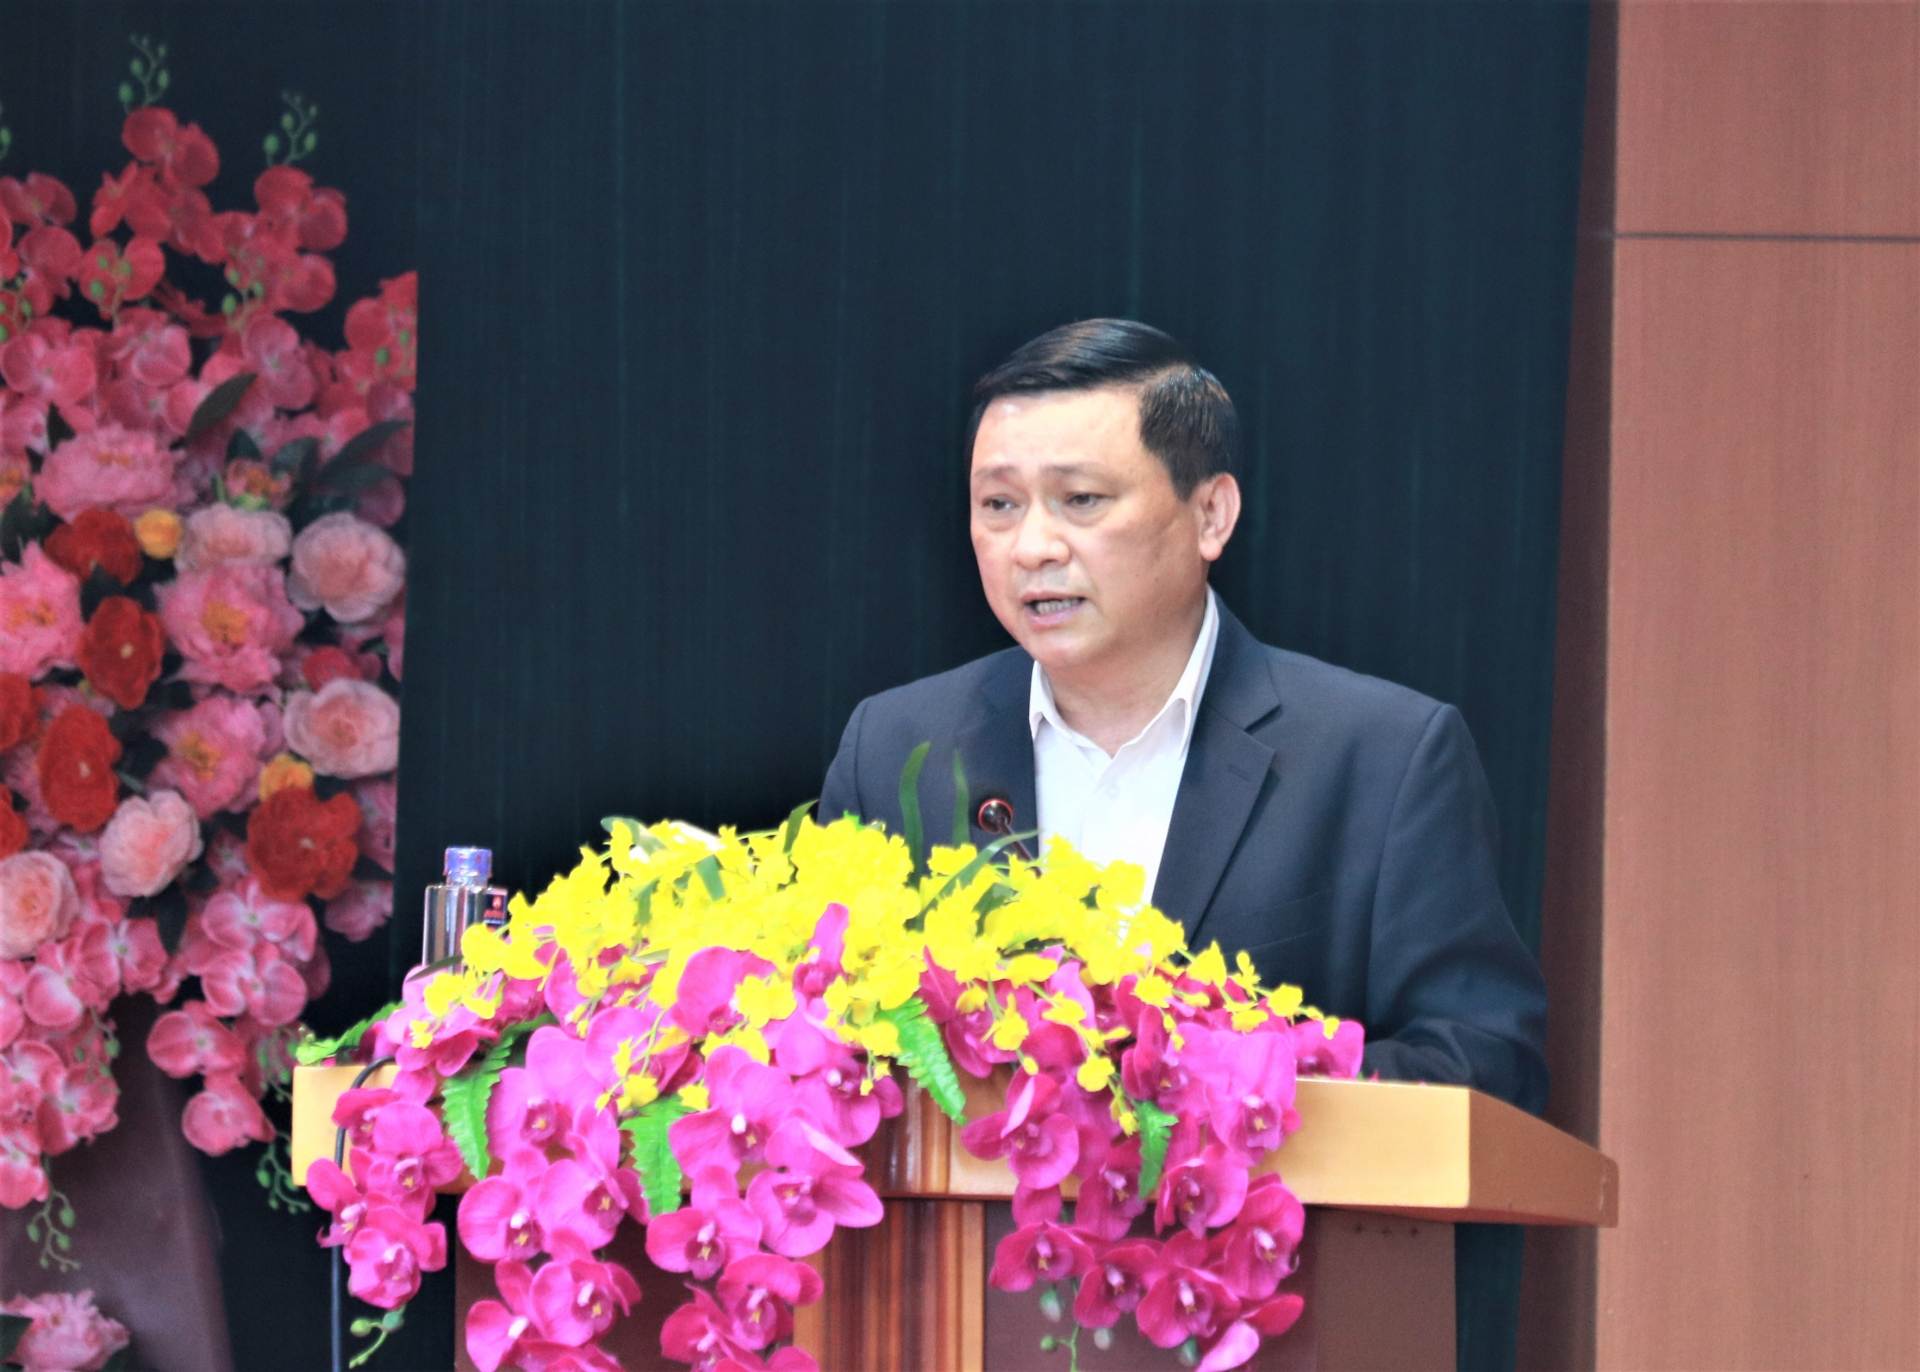 Trưởng Ban Tổ chức Tỉnh ủy Nguyễn Minh Tiến đề nghị Đảng ủy Công ty đặc biệt quan tâm công tác phát triển đảng viên trong doanh nghiệp, phấn đấu nâng tỷ lệ đảng viên trong toàn Đảng bộ lên 75% trong nhiệm kỳ 2020 – 2025.